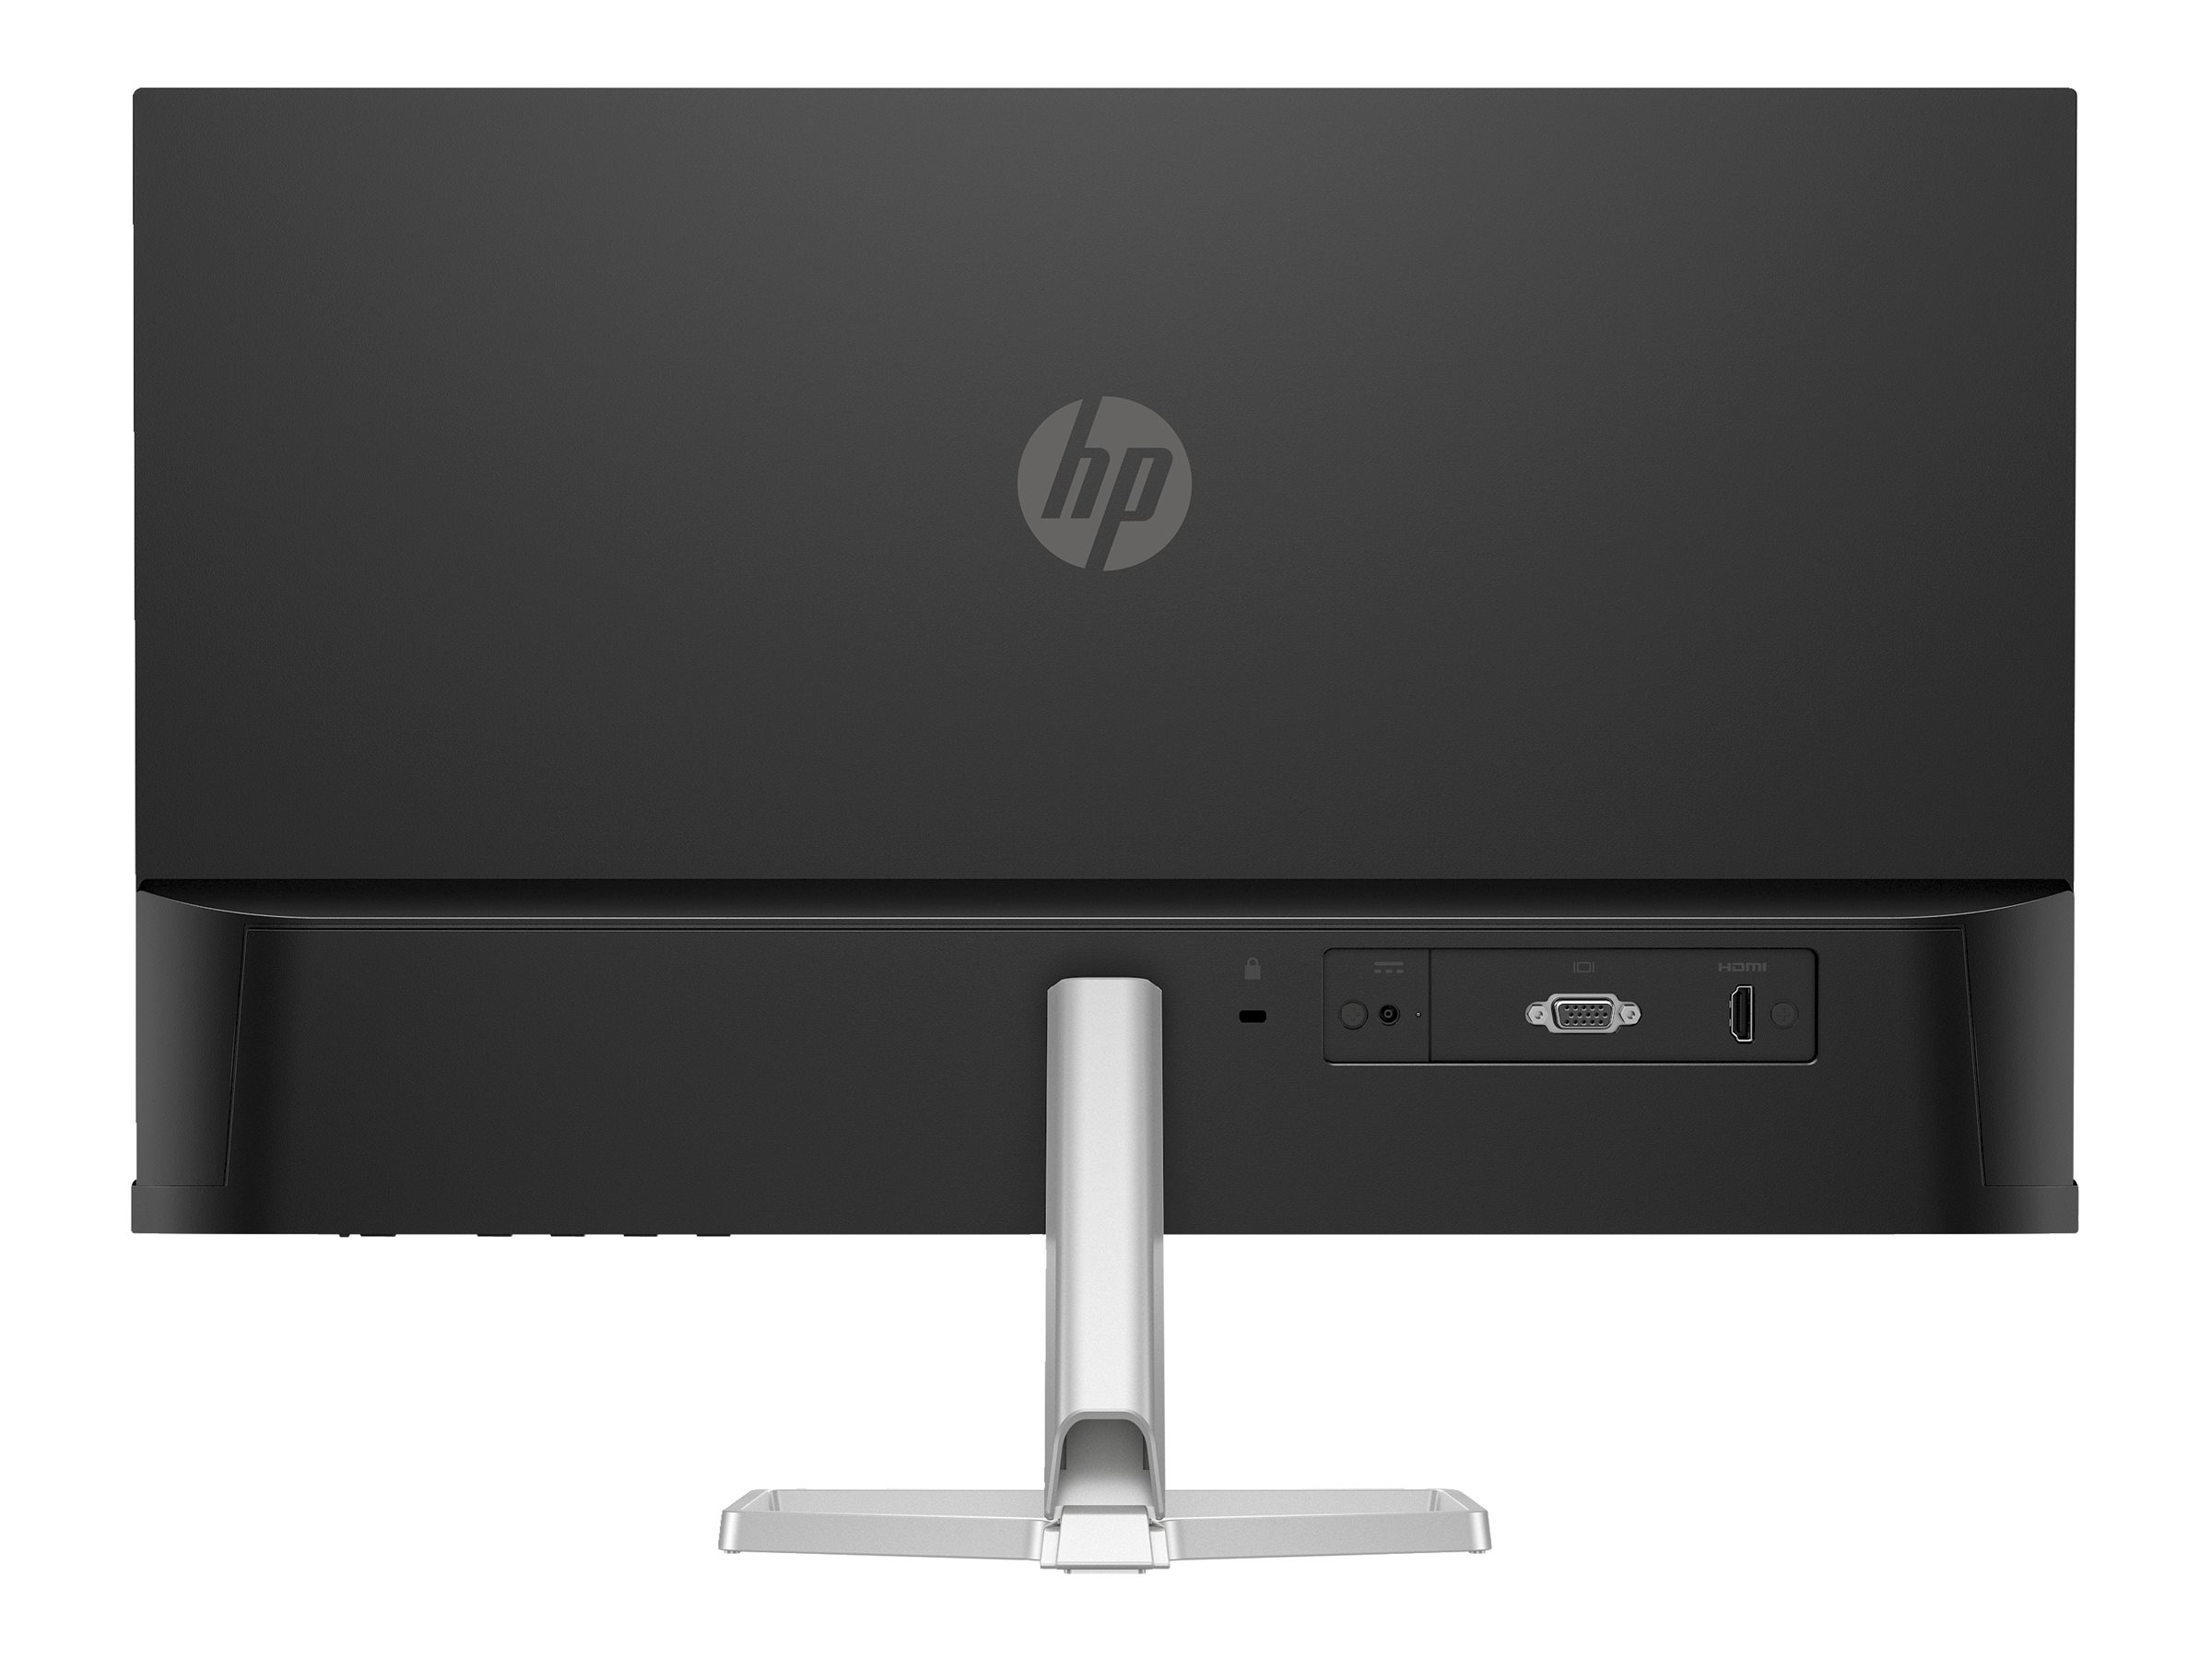 HP 524sf - 5 Series - écran LED - 24" (23.8" visualisable) - 1920 x 1080 Full HD (1080p) @ 100 Hz - IPS - 300 cd/m² - 1500:1 - 5 ms - HDMI, VGA - noir, argent (support) - 94C17AA#ABB - Écrans d'ordinateur